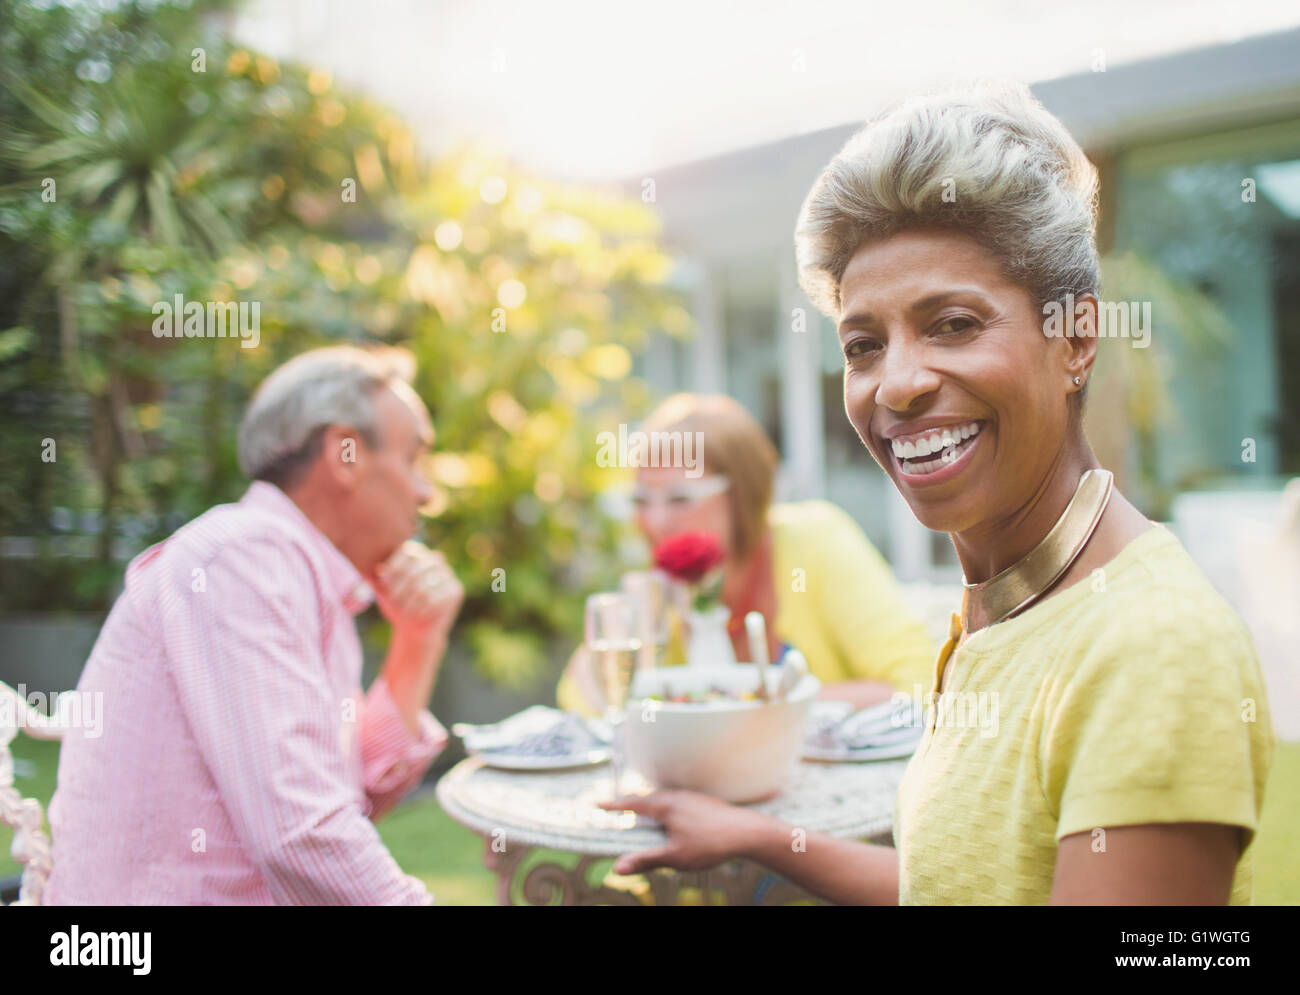 Portrait smiling mature woman enjoying déjeuner avec des amis dans le jardin Banque D'Images